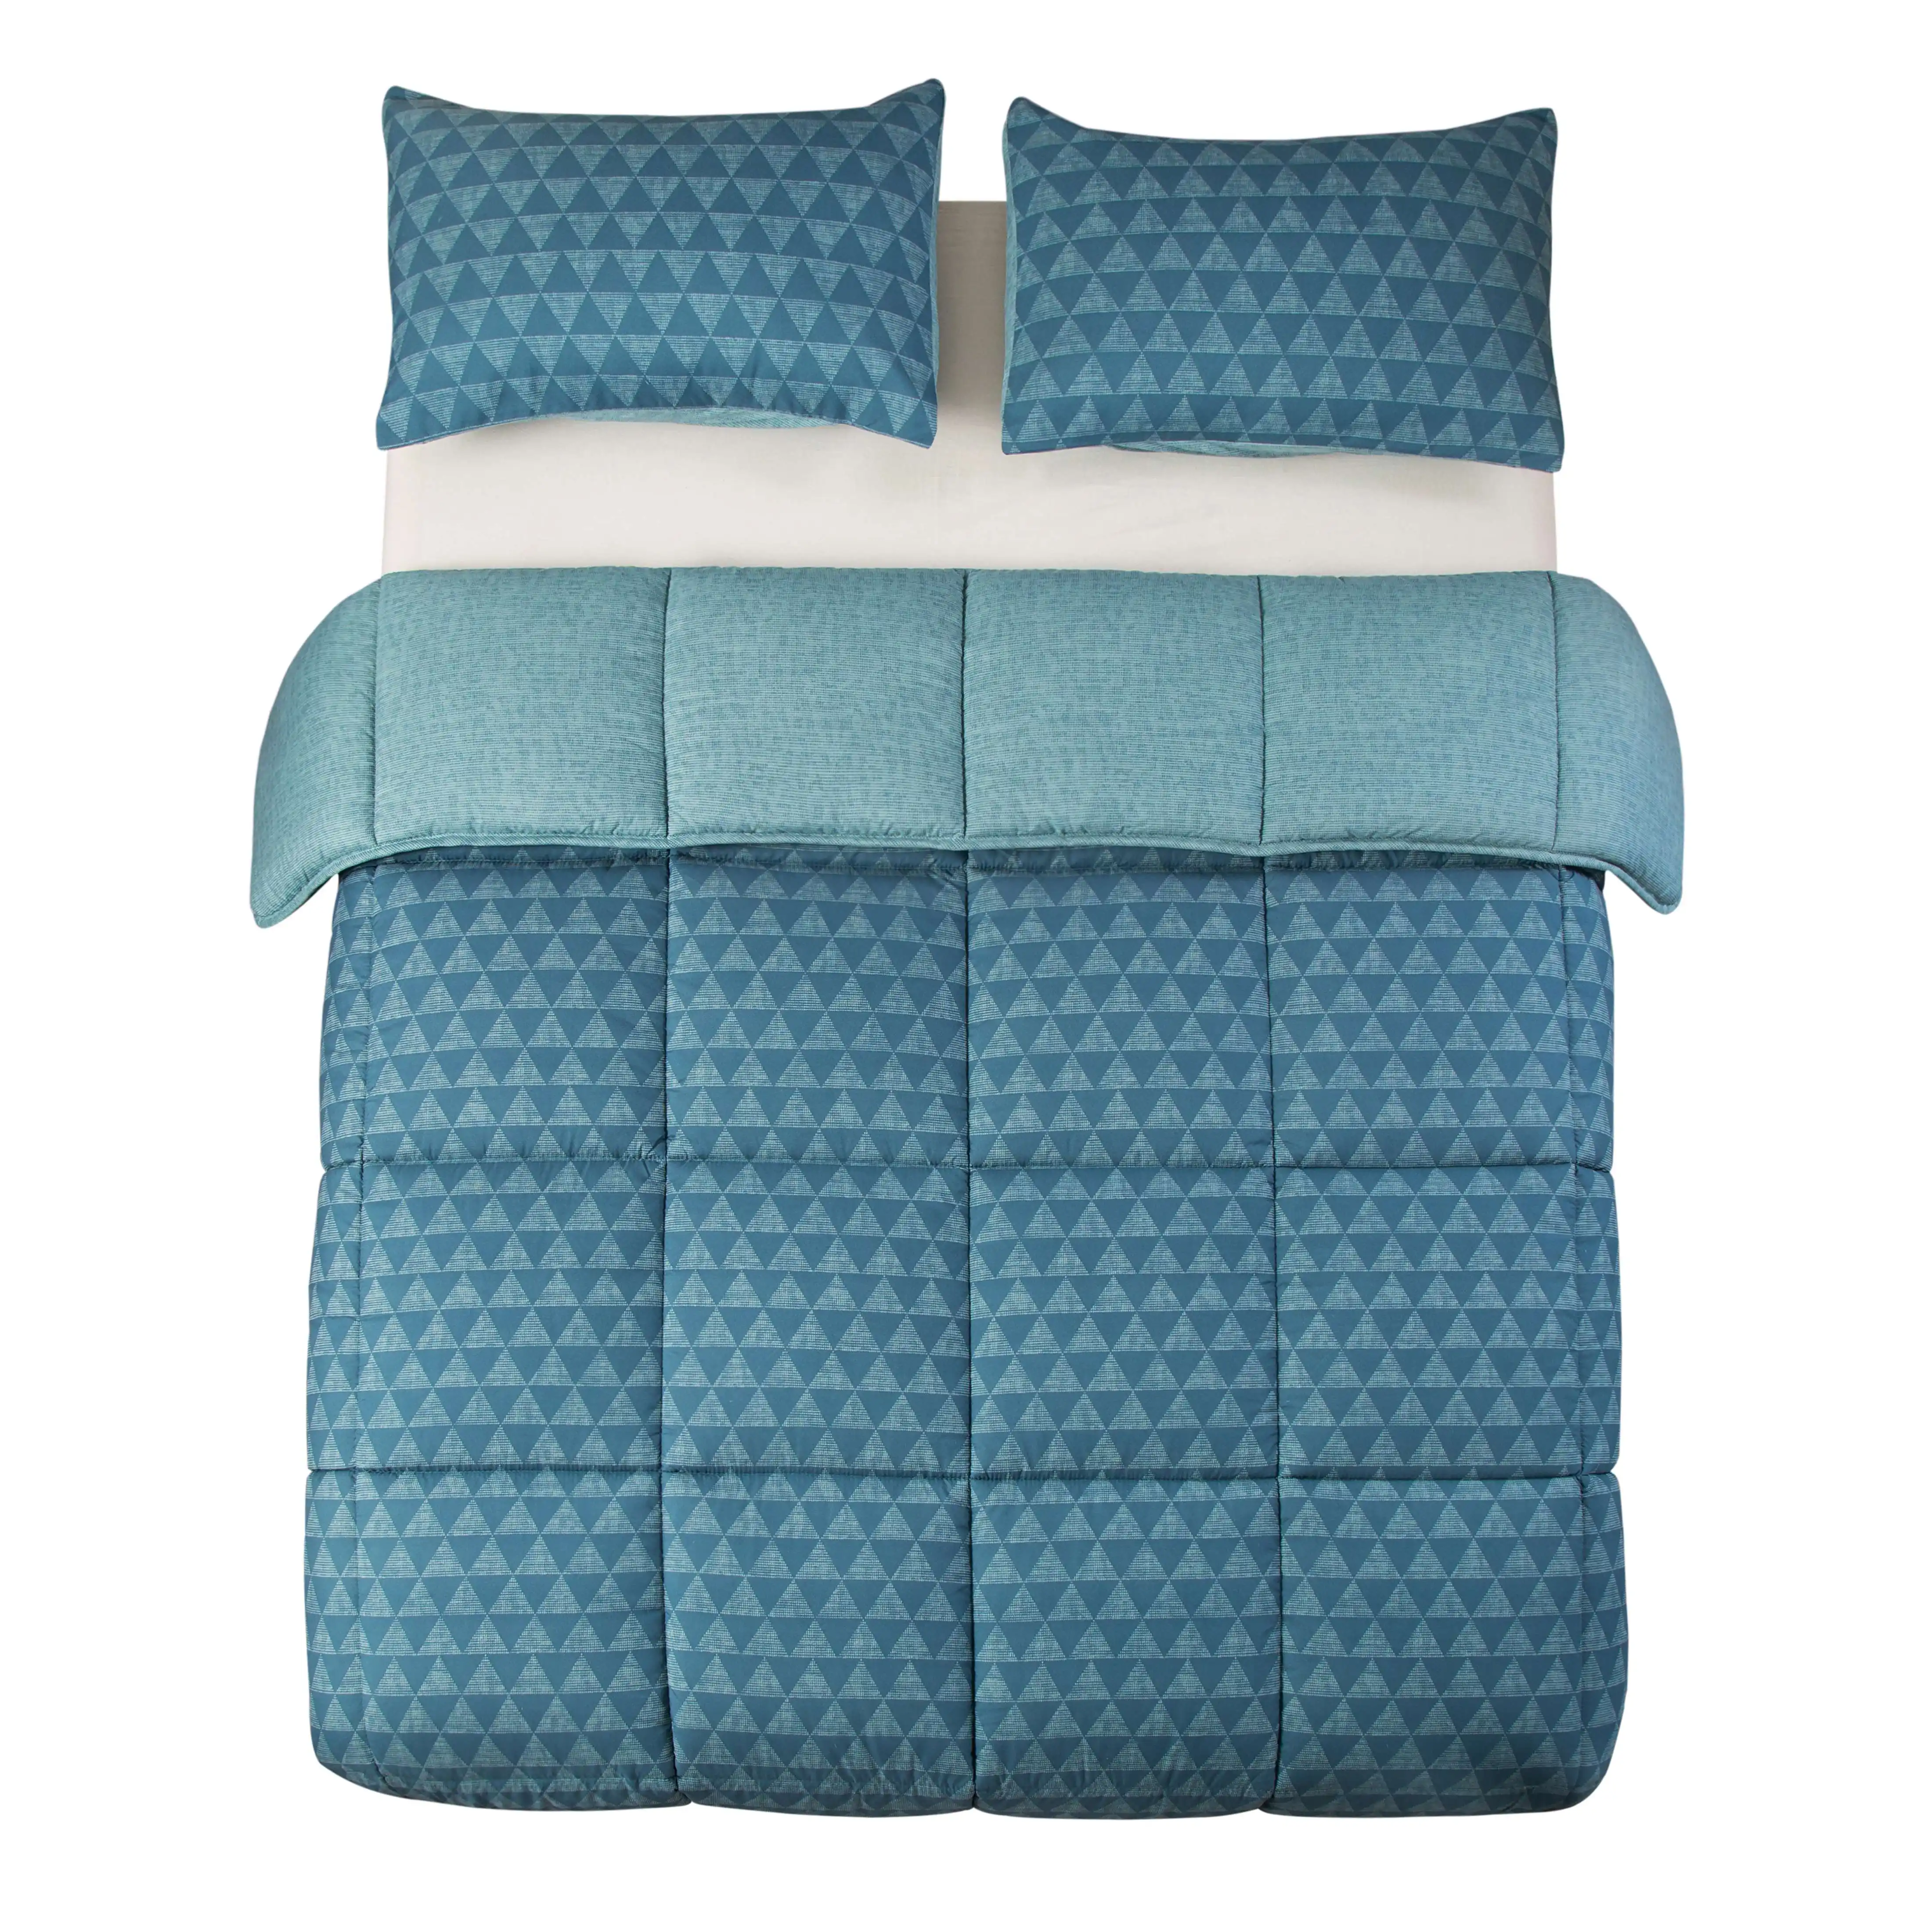 Home Textile Bed Sheet Printed Bedsheet Bedding Set